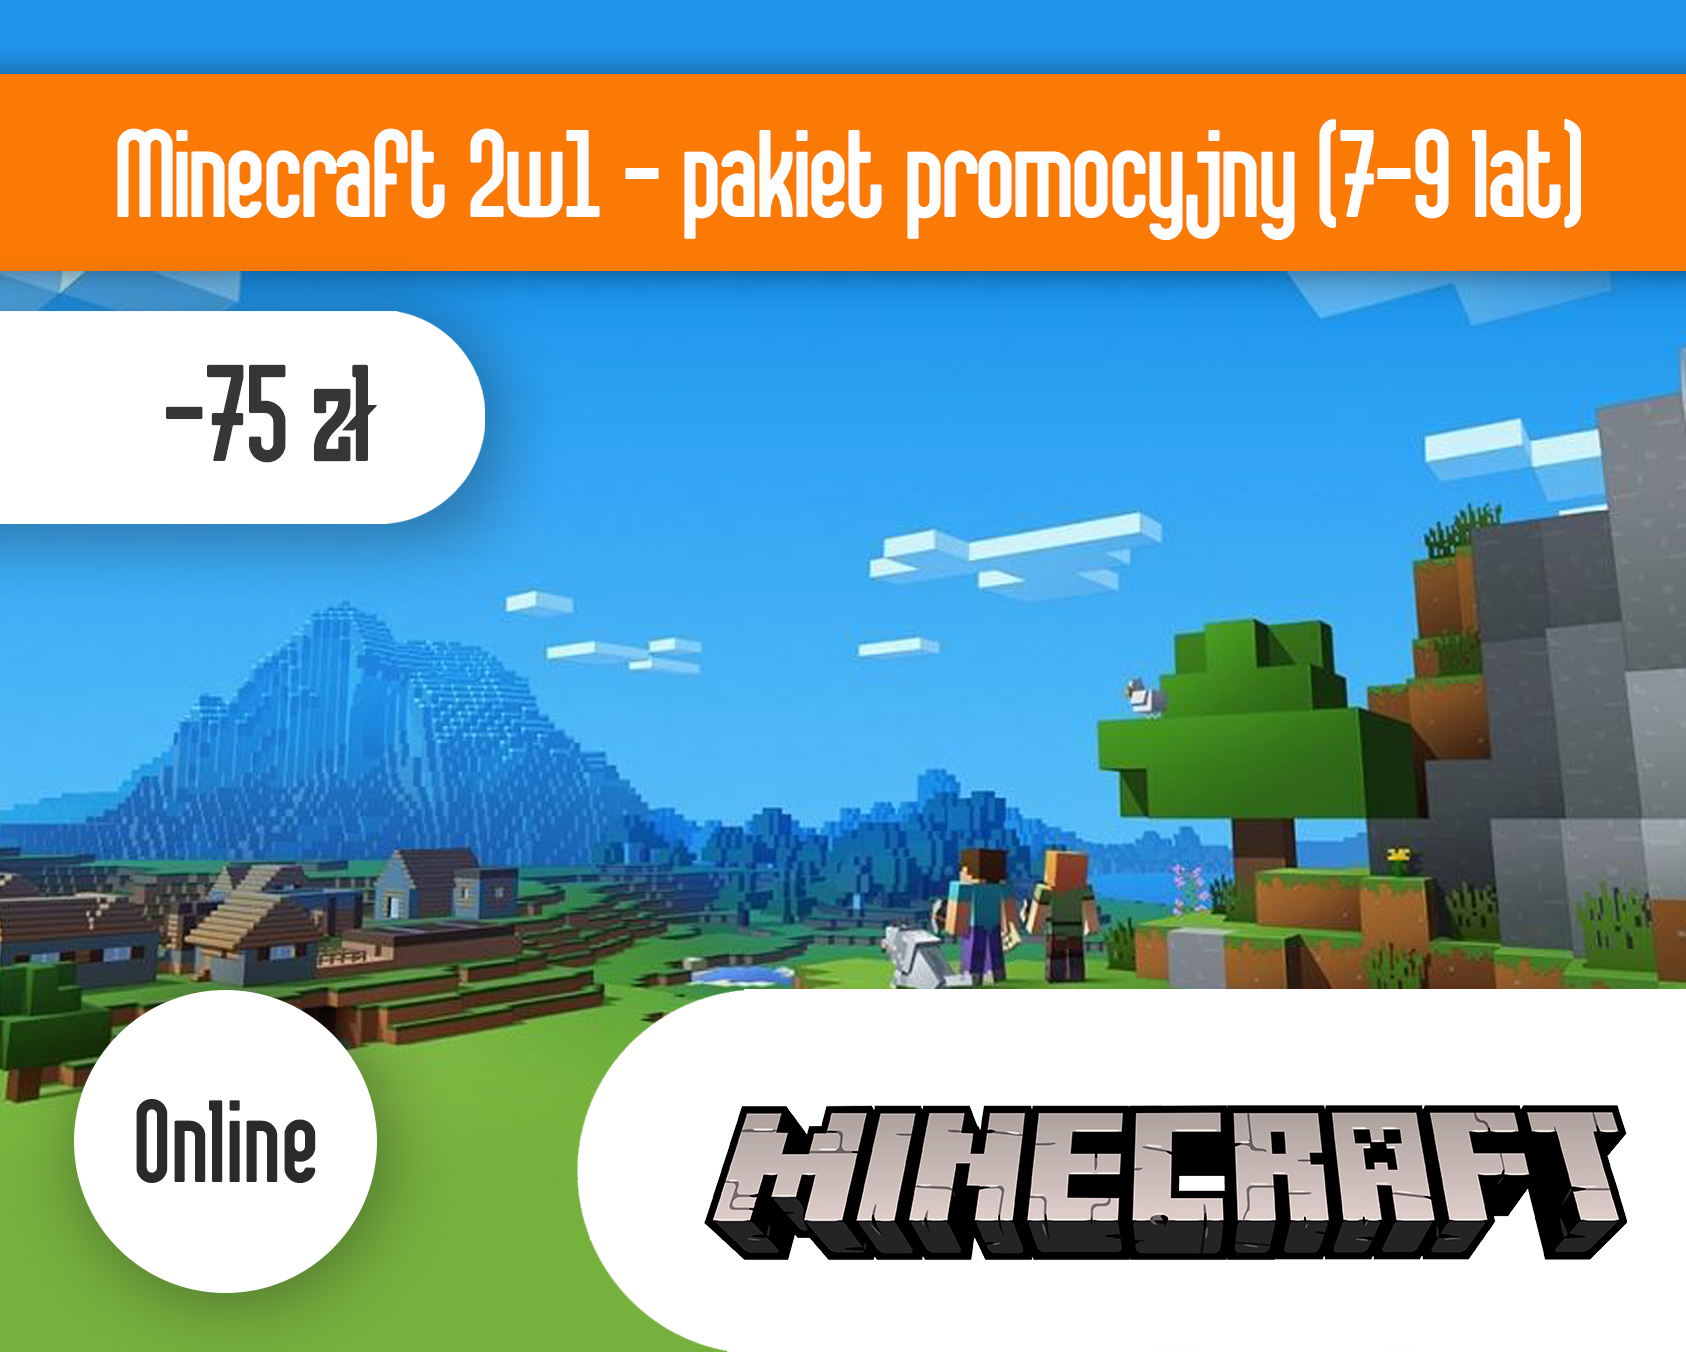 Minecraft 2w1 ONLINE - pakiet promocyjny